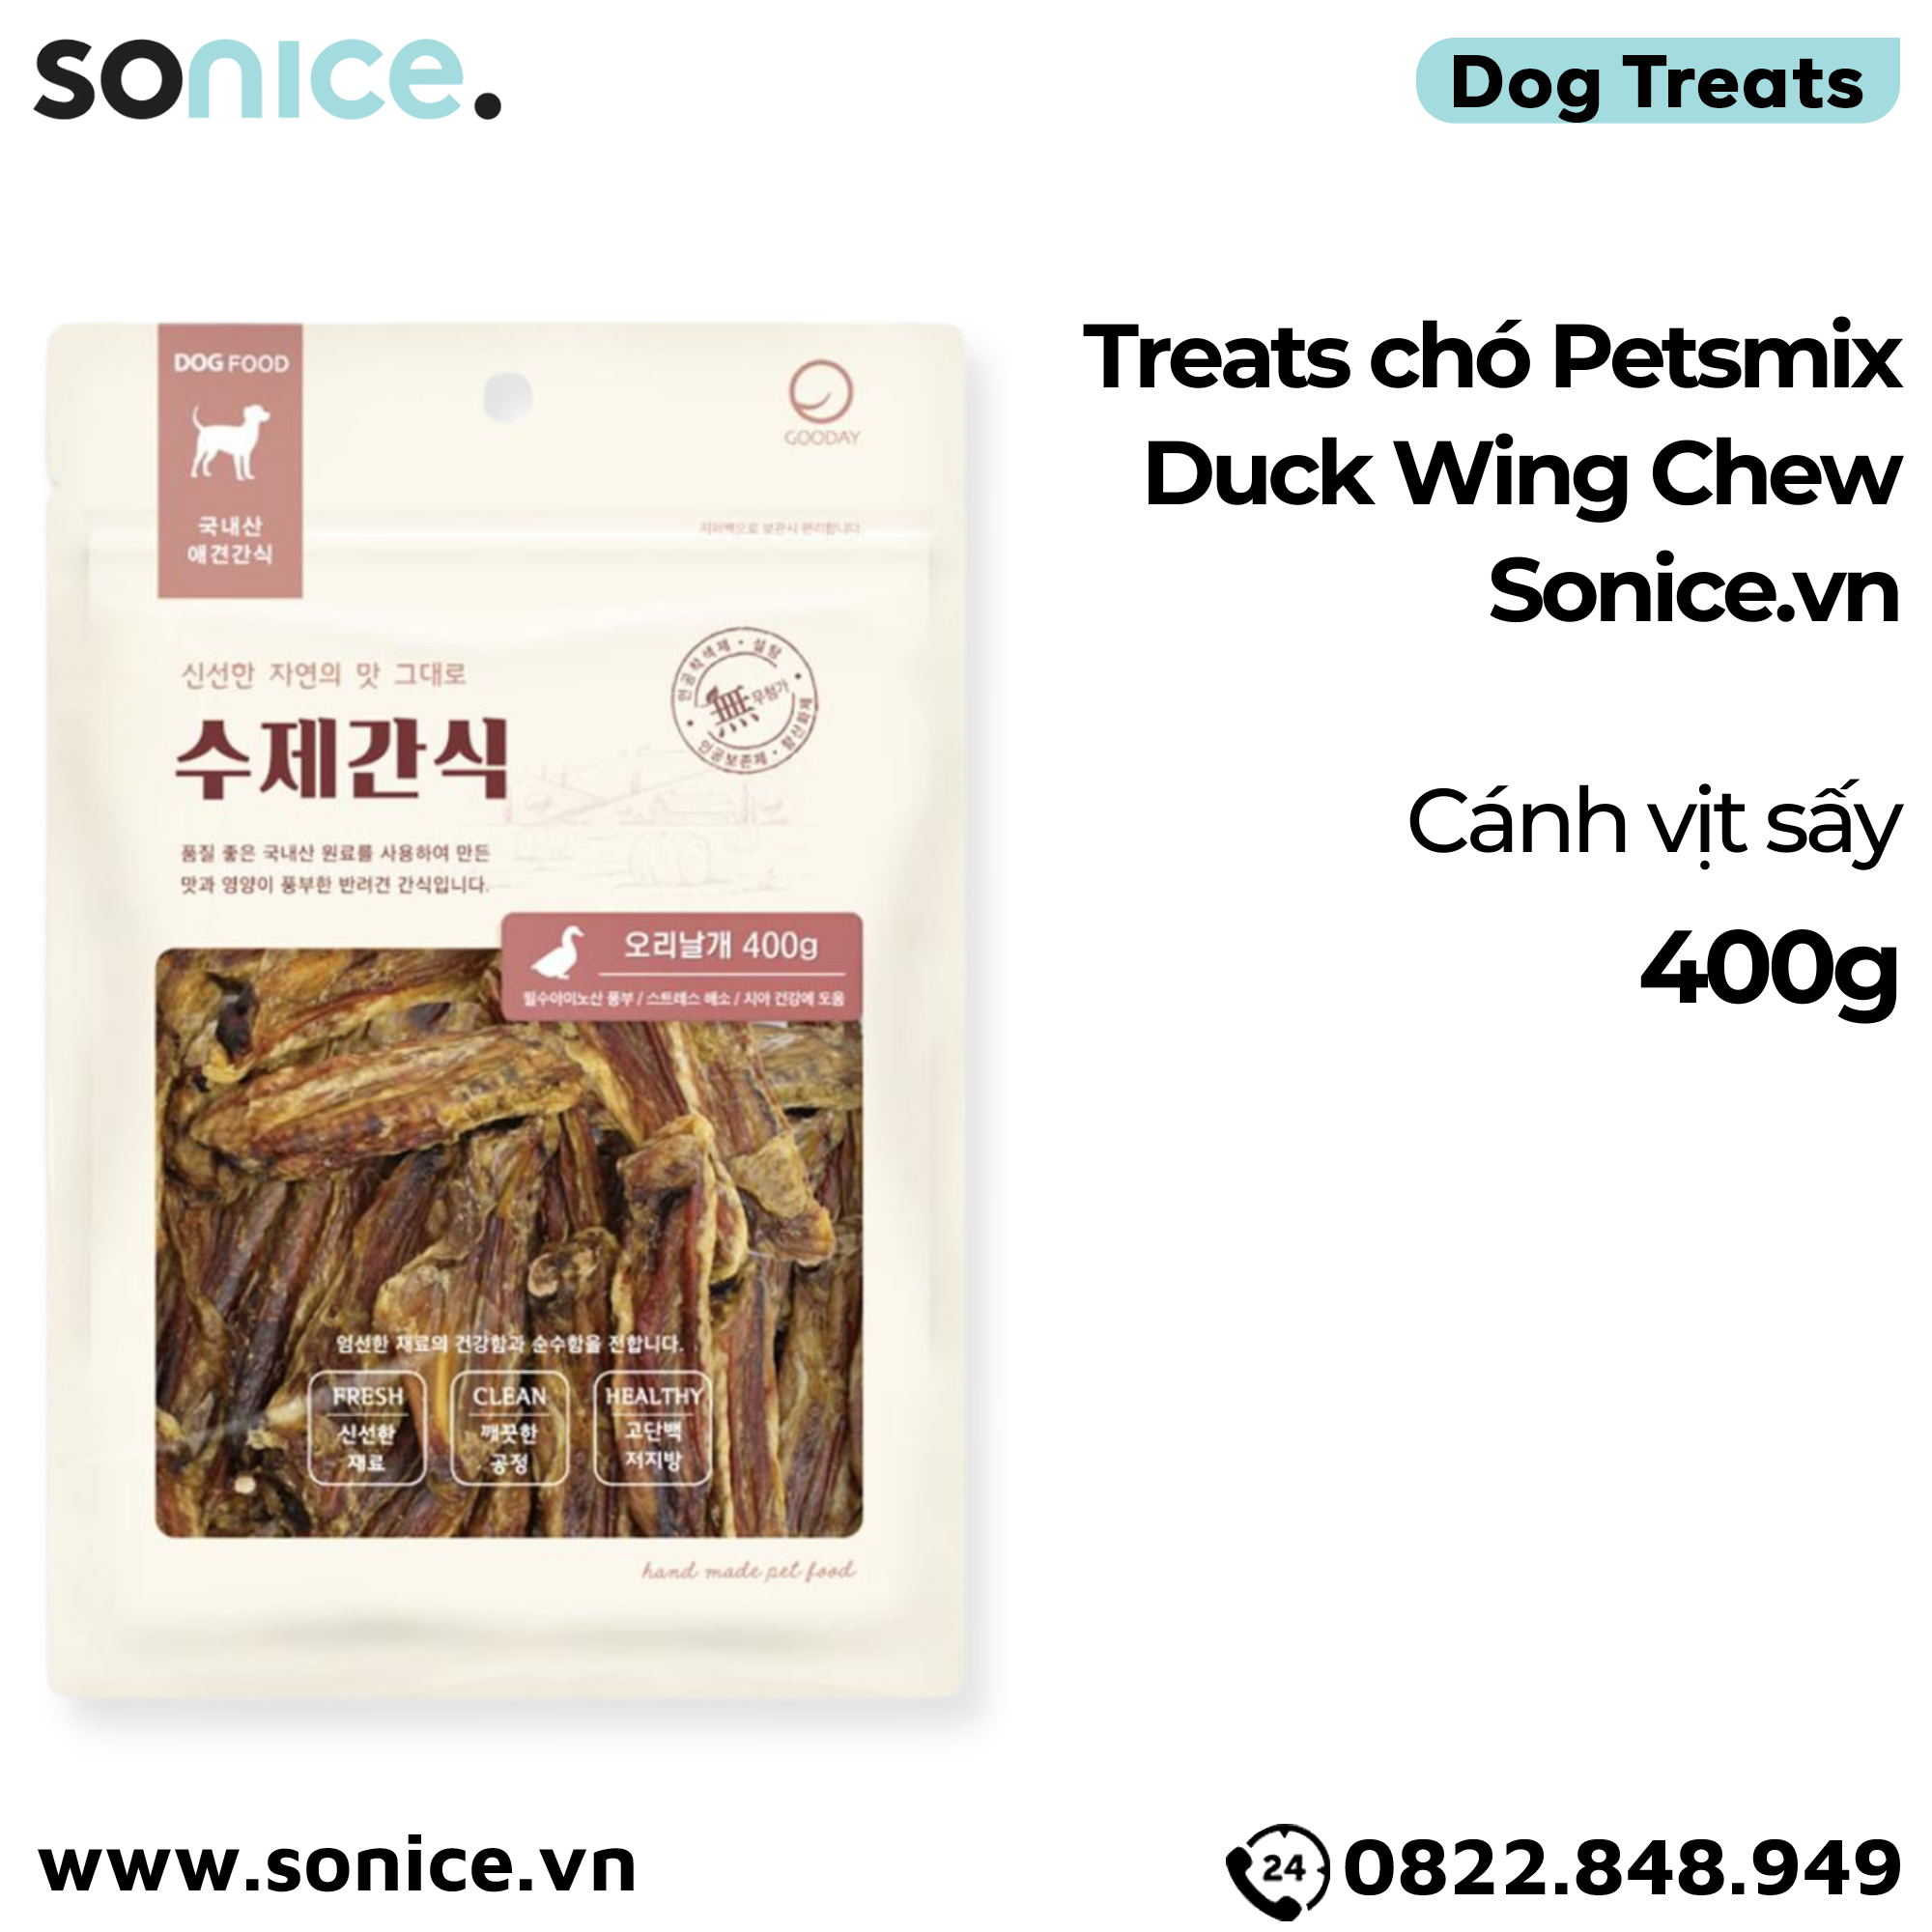  Treats chó Petsmix Duck Wing Chew 400g - cánh vịt sấy dog treats SONICE. 